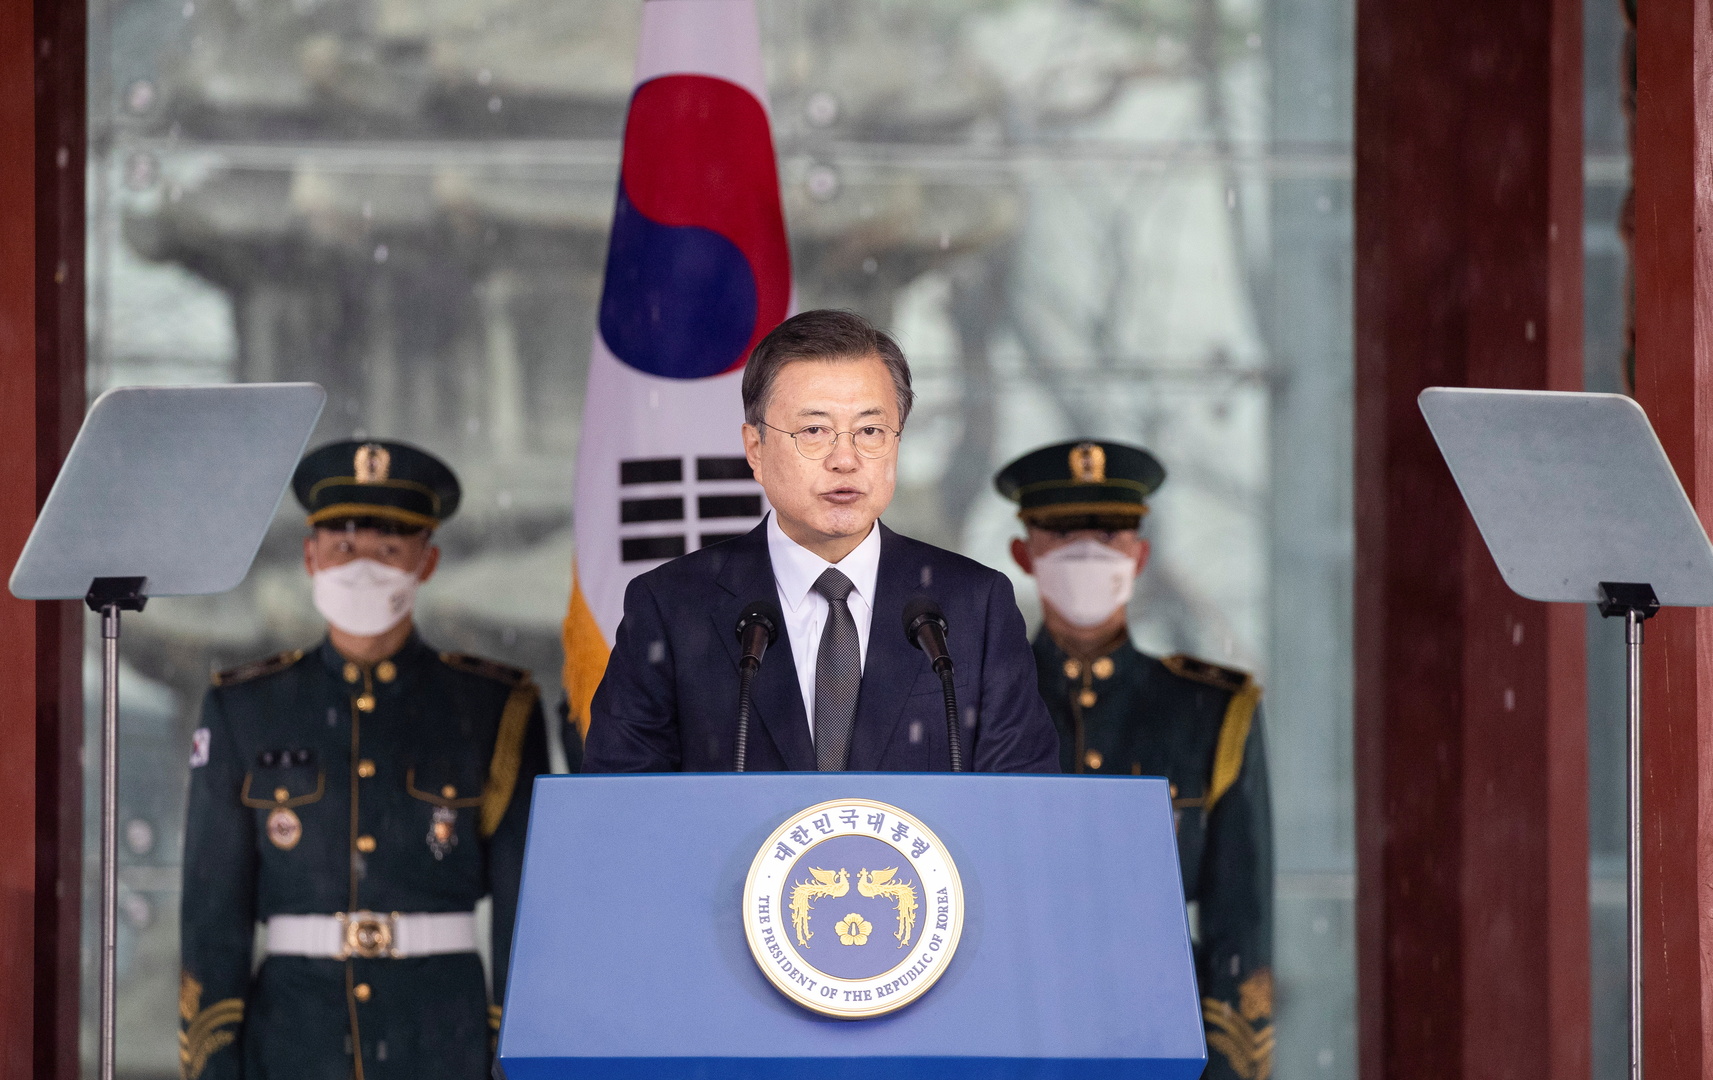 رئيس كوريا الجنوبية يزور البيت الأبيض في 21 مايو